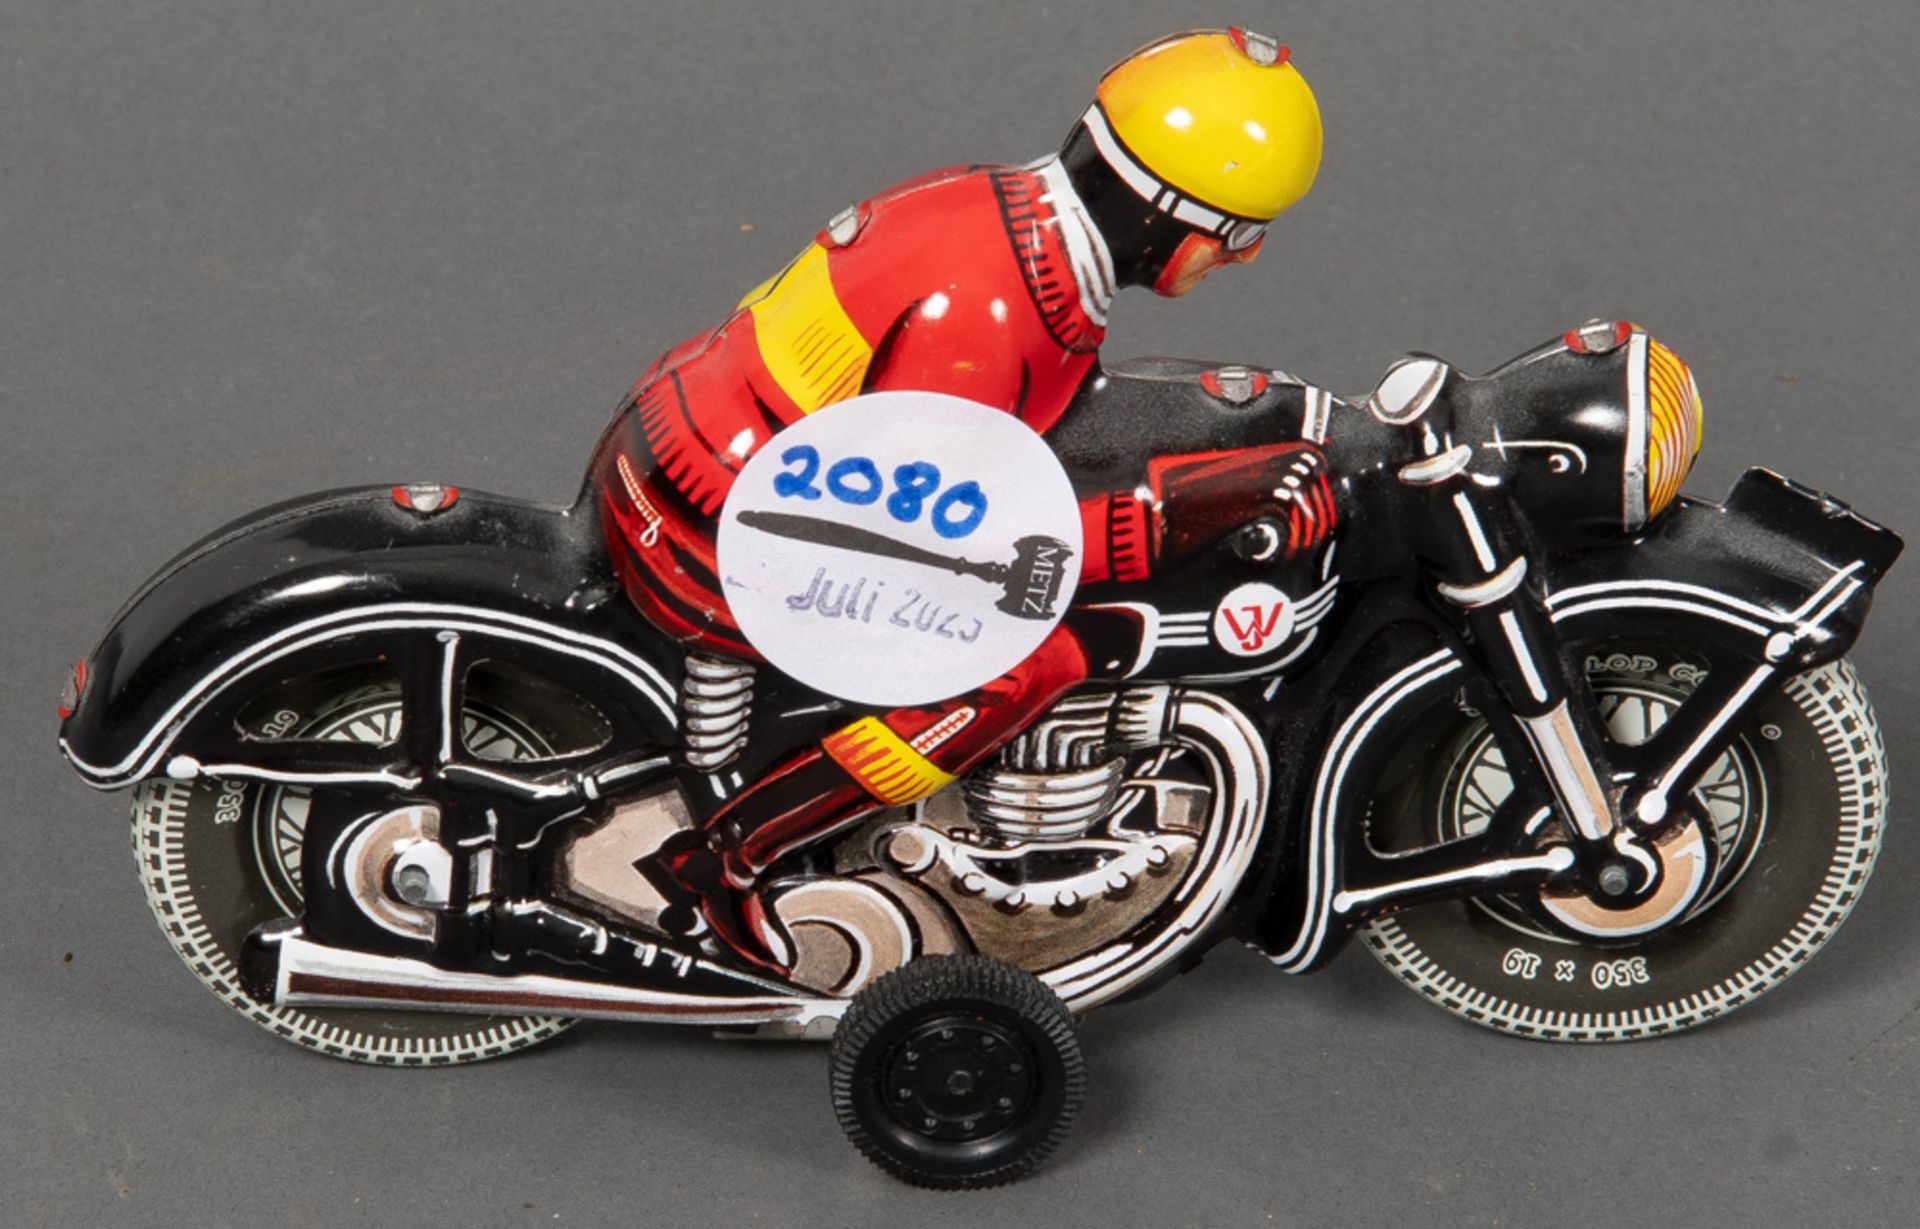 Spielzeug-Motorrad. Tippco, Nürnberg 20. Jh. Blech, bunt bemalt, H=10,5 cm. (Funktion ungeprüft)